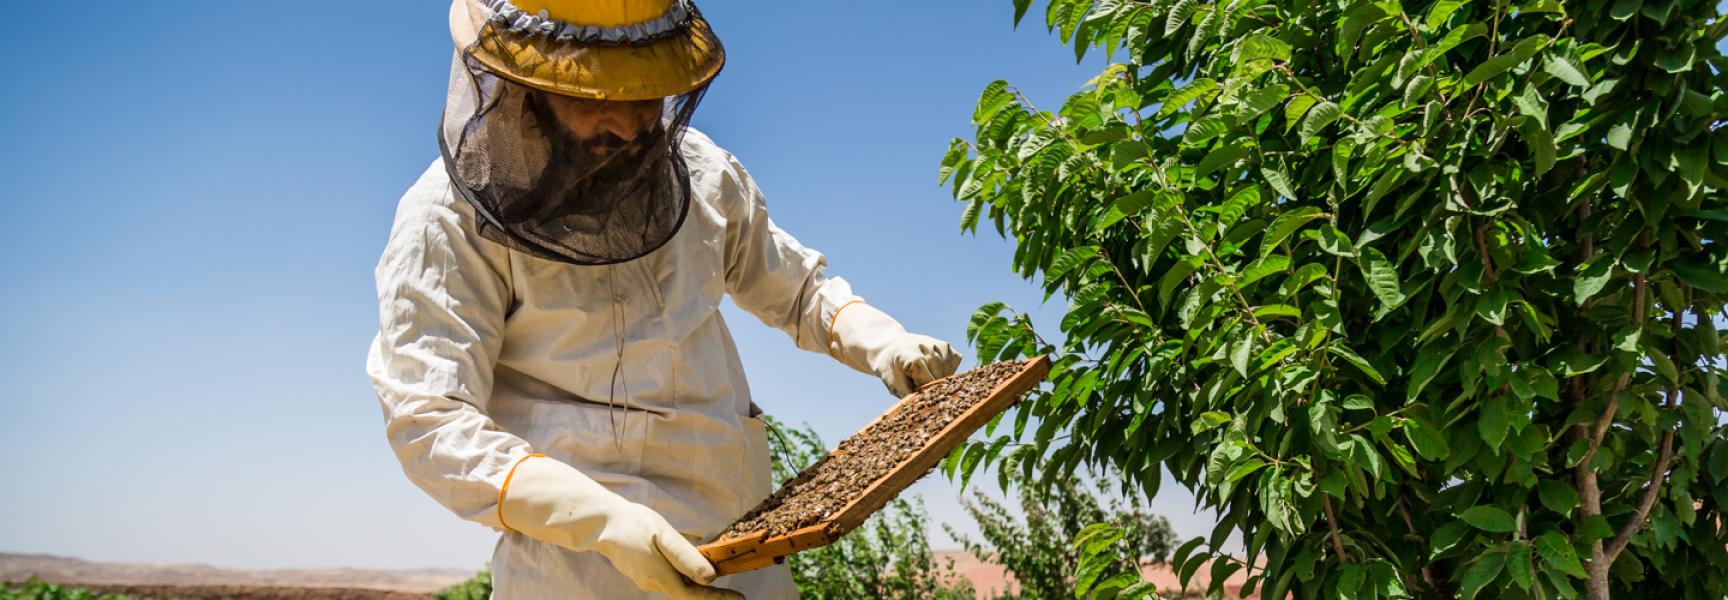 Beekeeper in Afghanistan